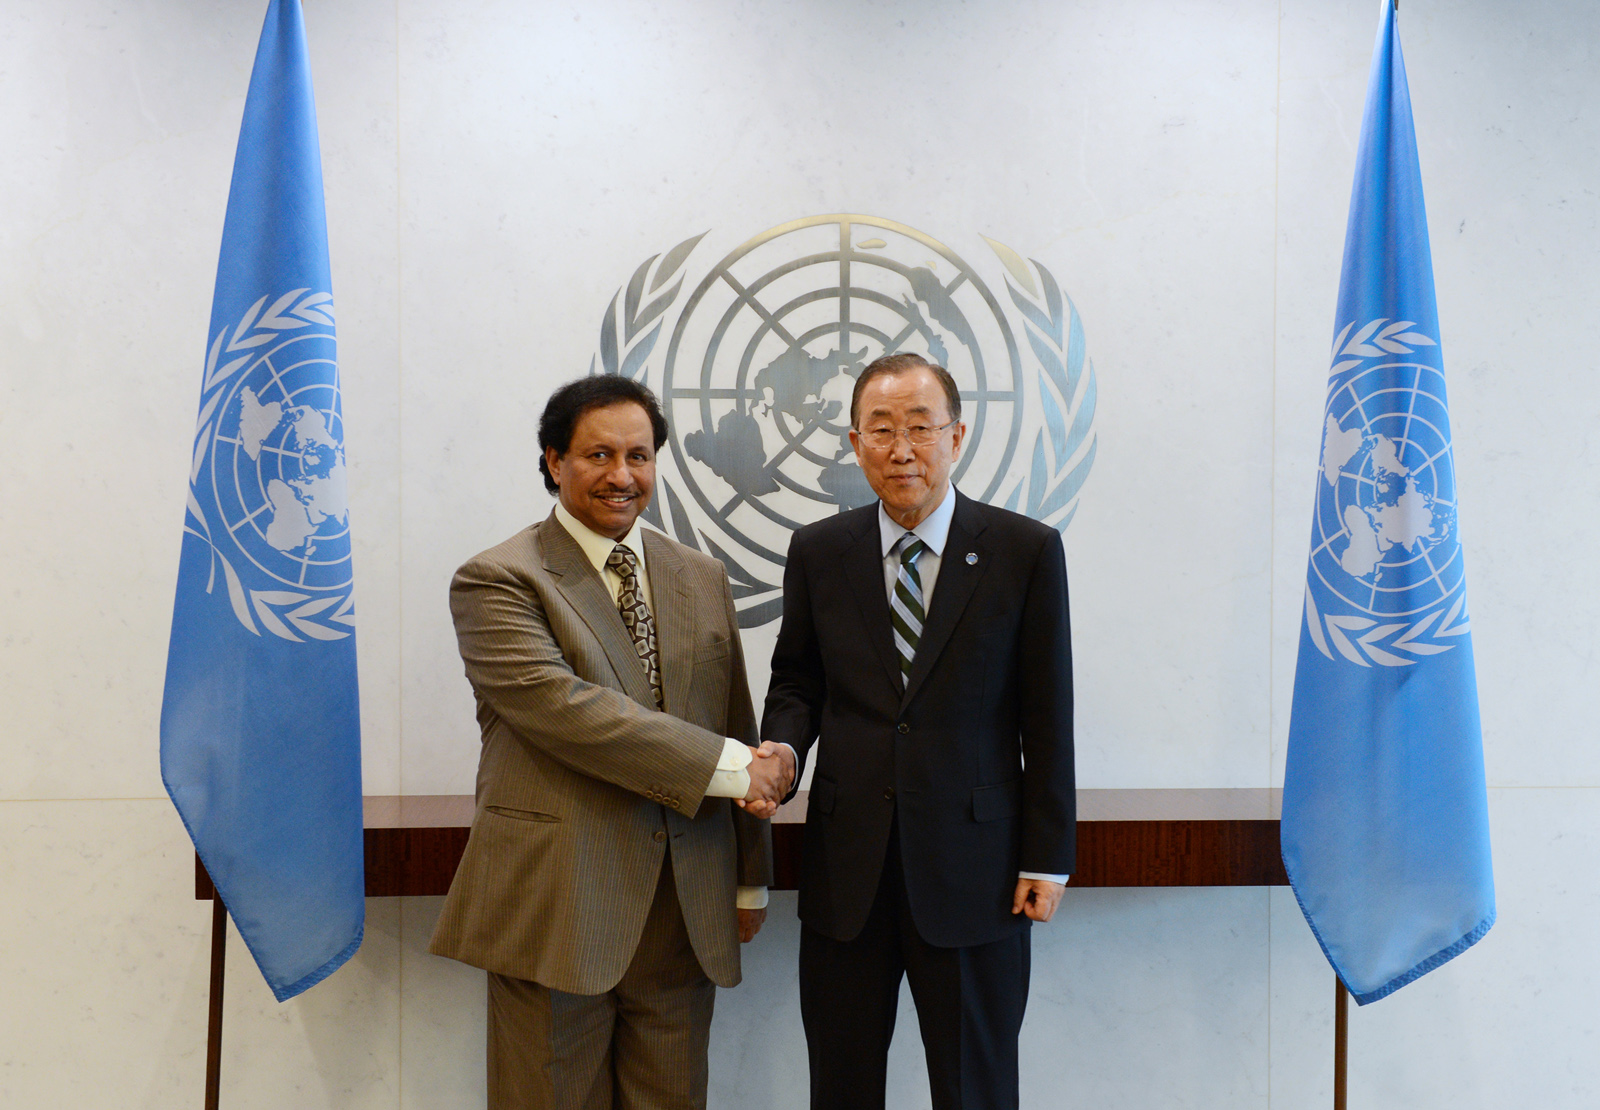 His Highness Prime Minister Sheikh Jaber Mubarak Al-Hamad Al-Sabah meets UN Secretary General Ban Ki-moon